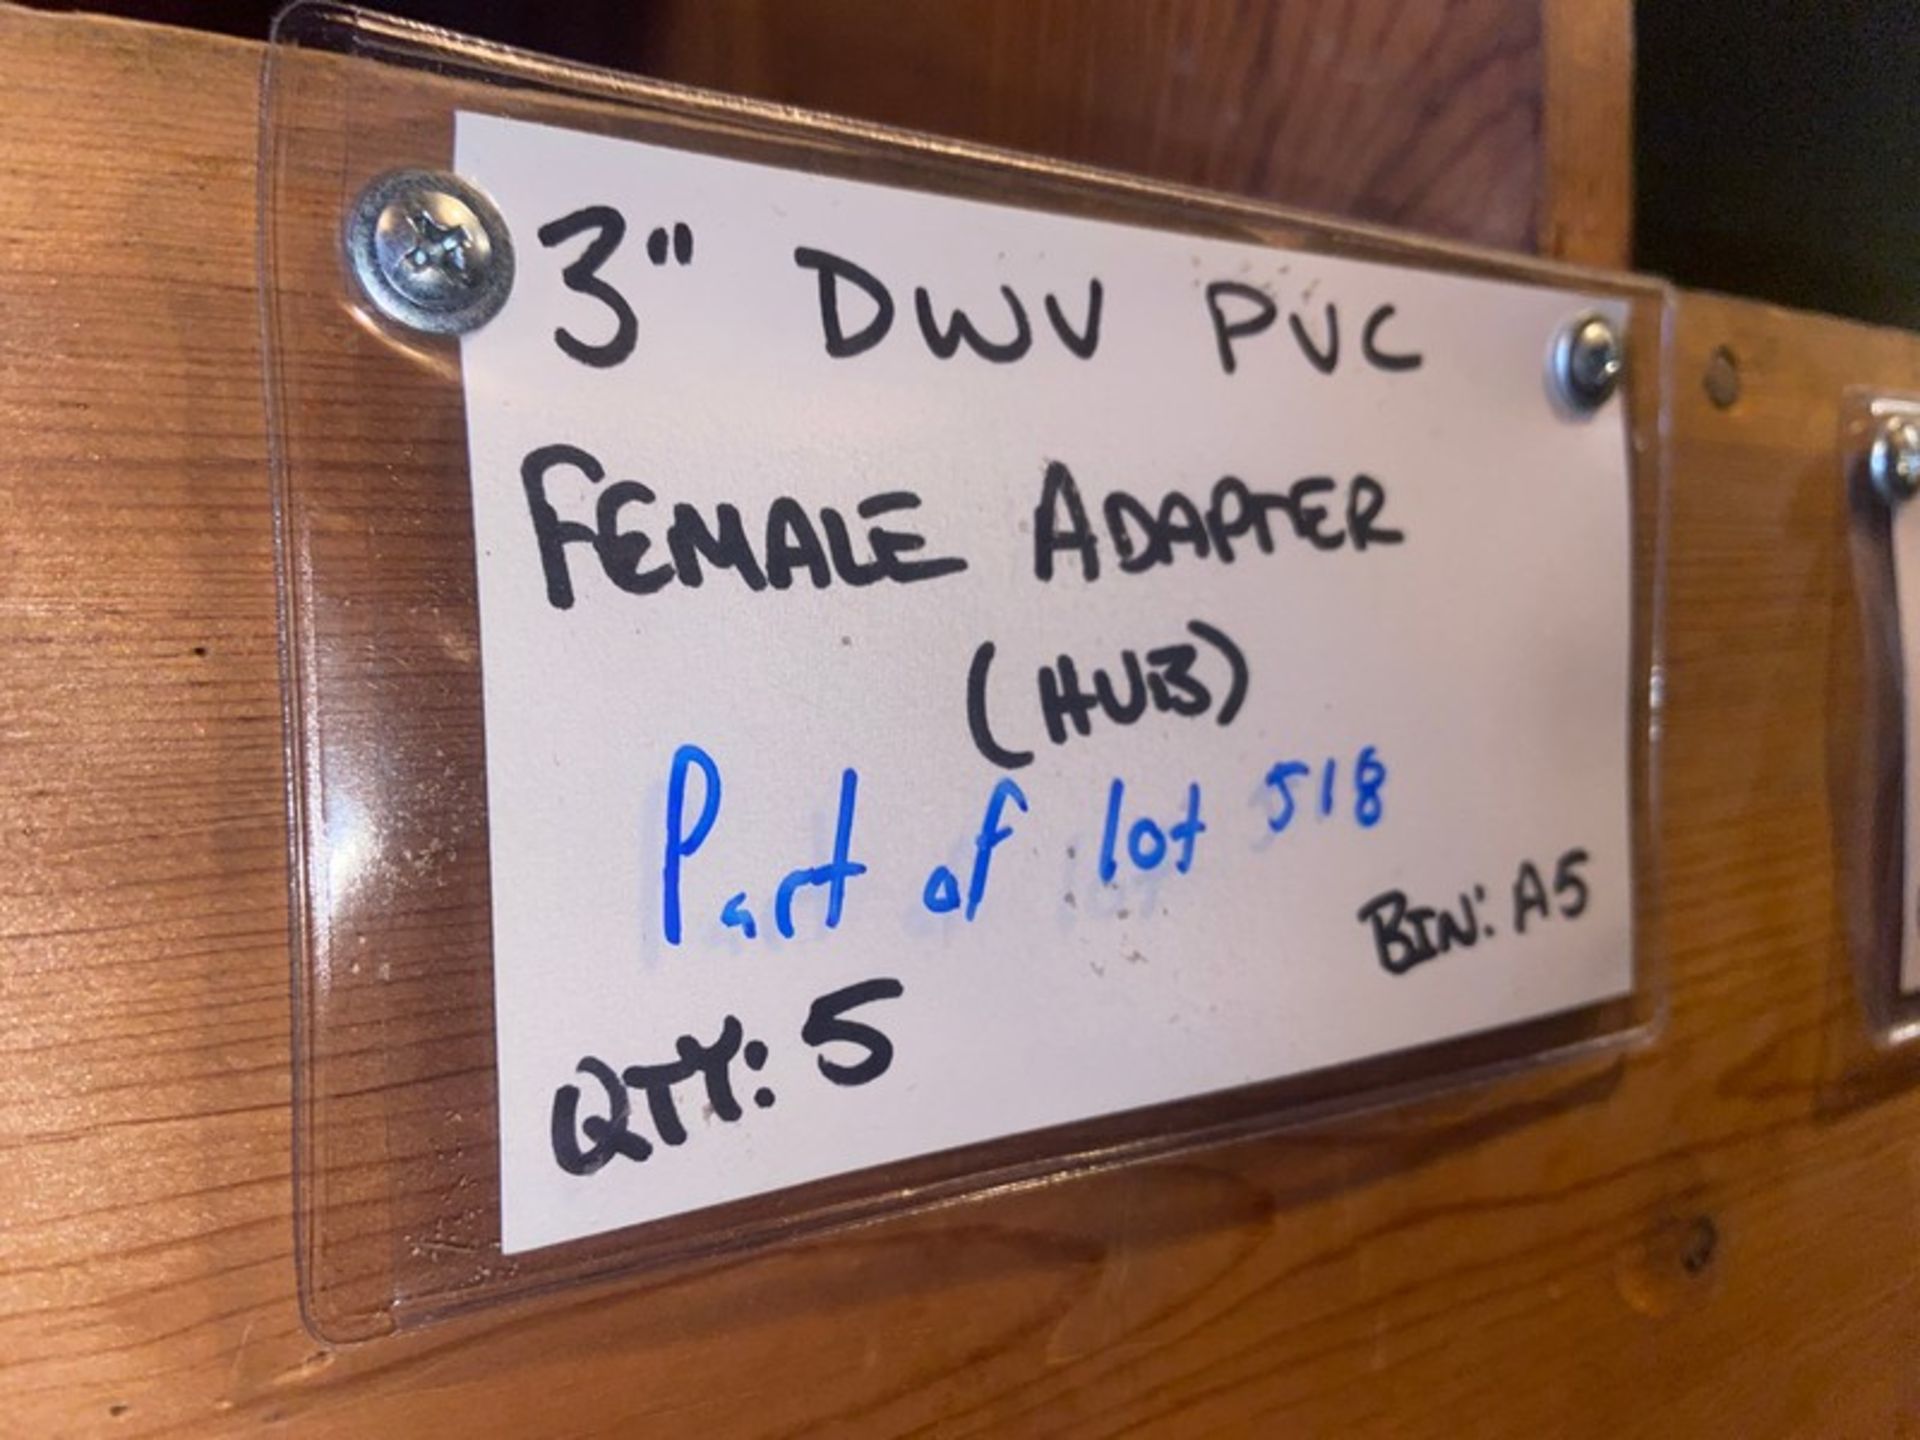 (3) 3” DWV PVC MALE ADAPTER (Bin: A5), Includes (7) 3” DWV PVC Female Adapter (STREET) (Bin:A5), - Image 4 of 11